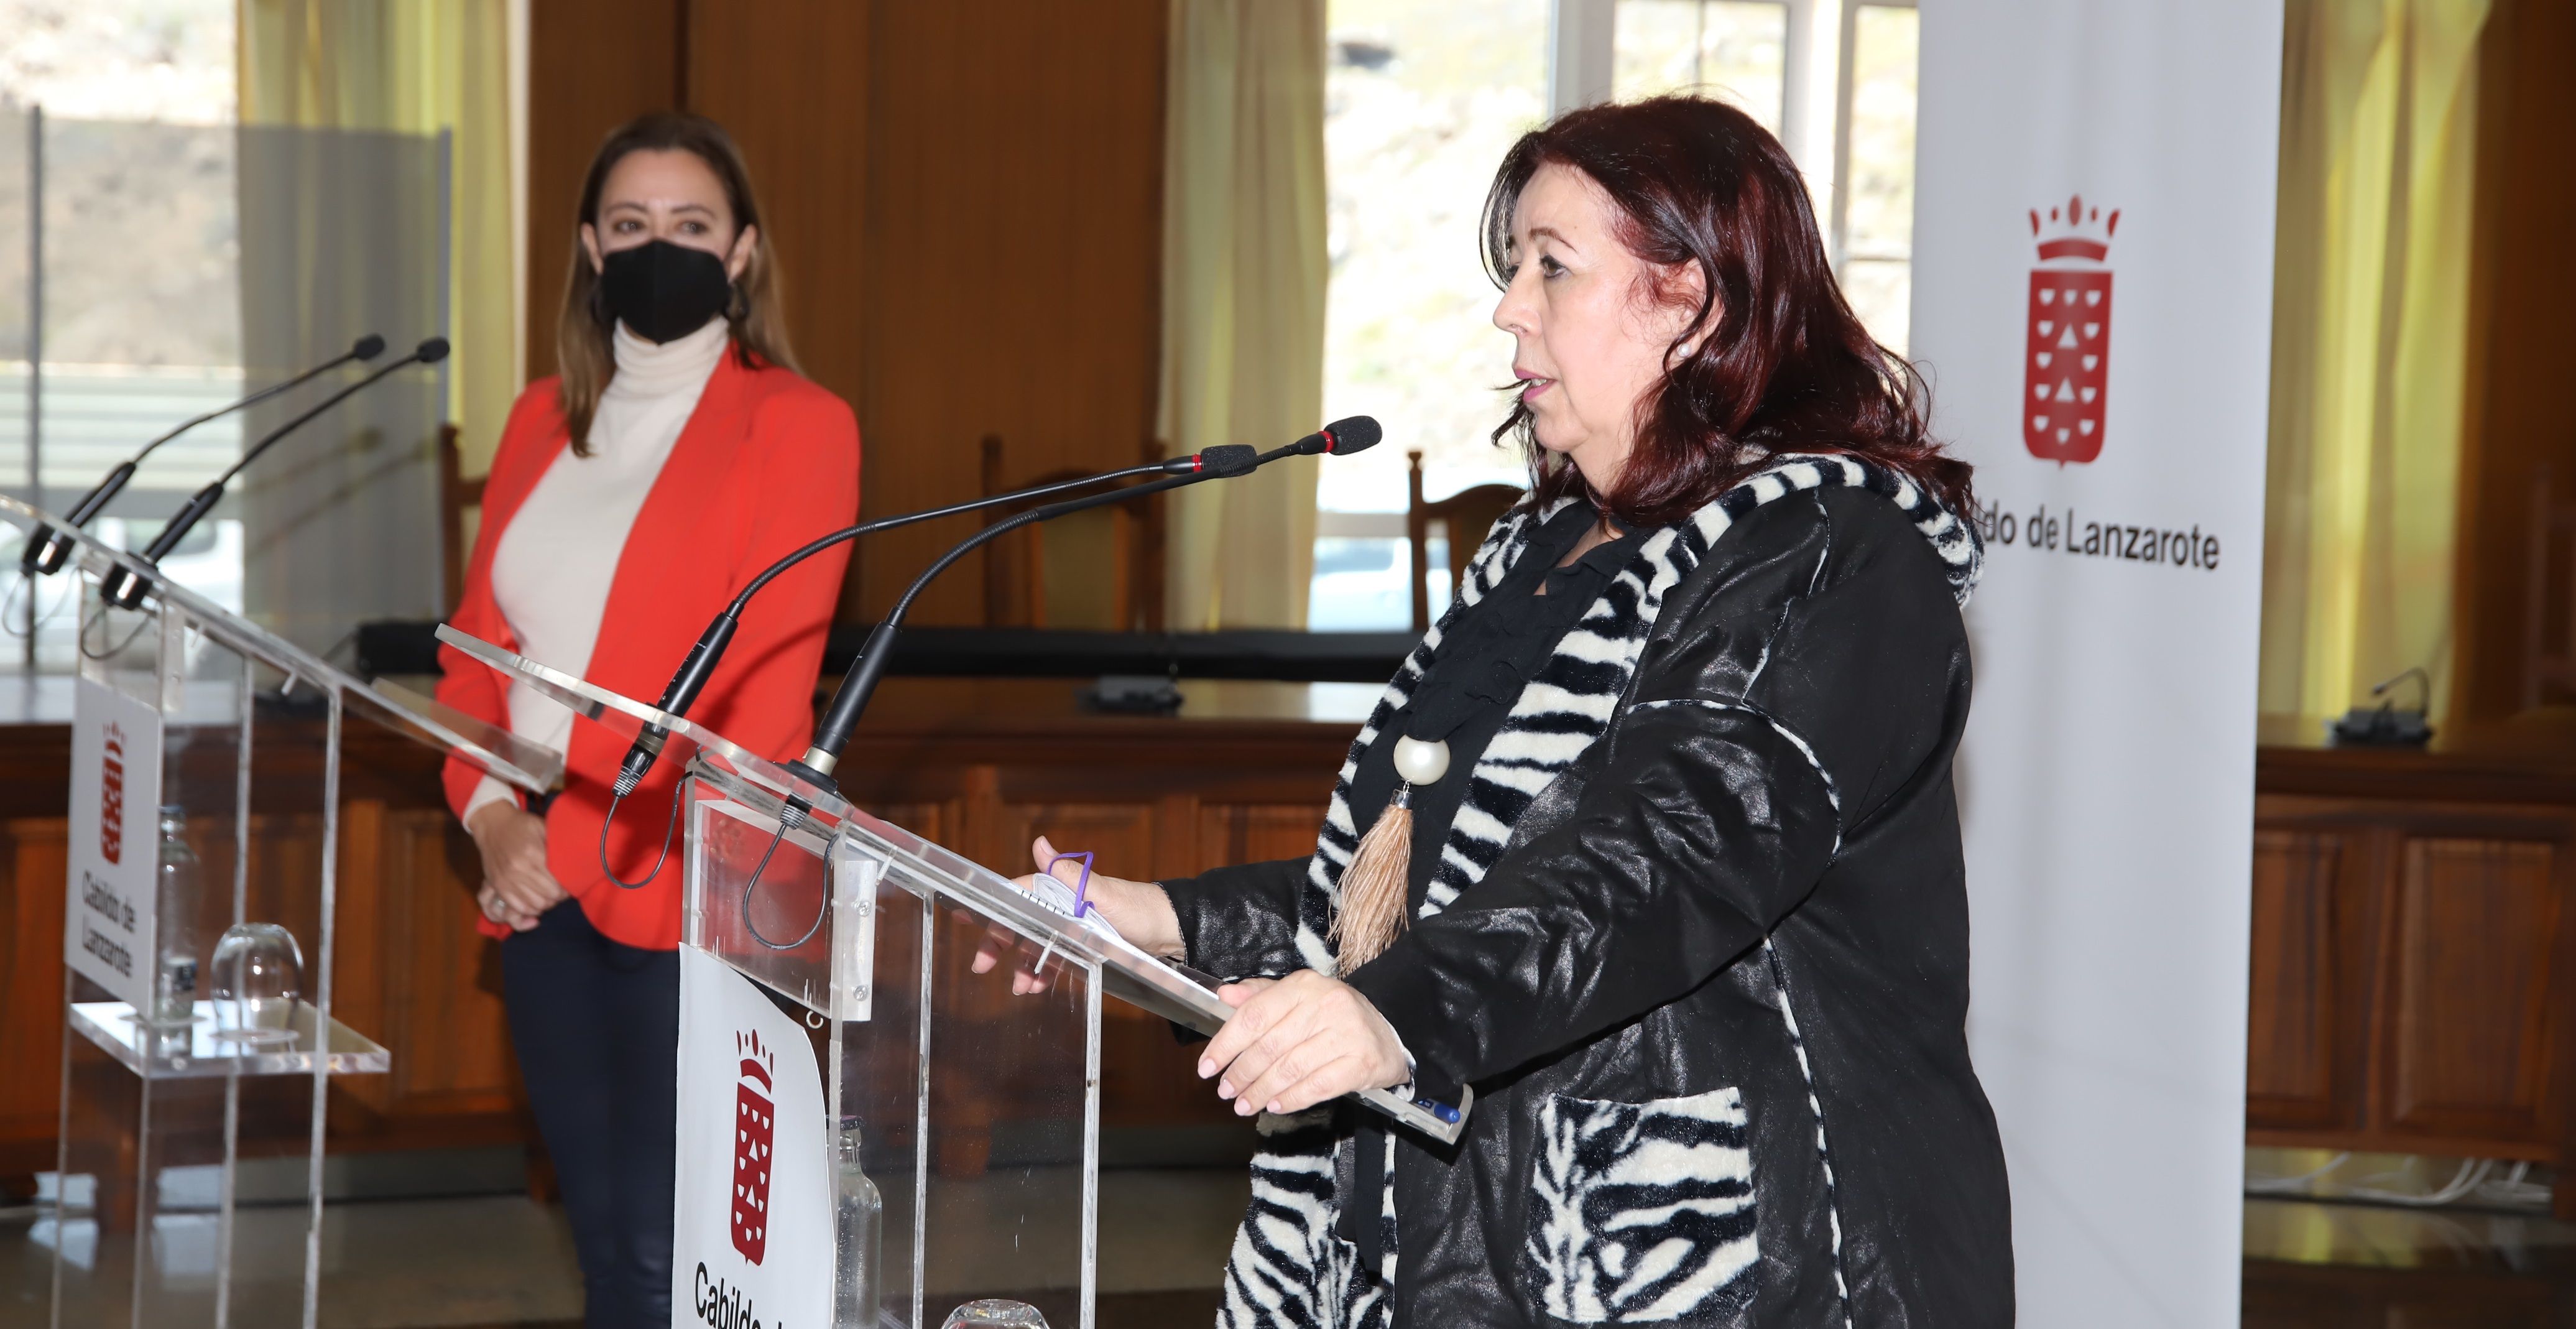 La consejera de Educación, Manuela Armas, durante la rueda de prensa con la presidenta del Cabildo